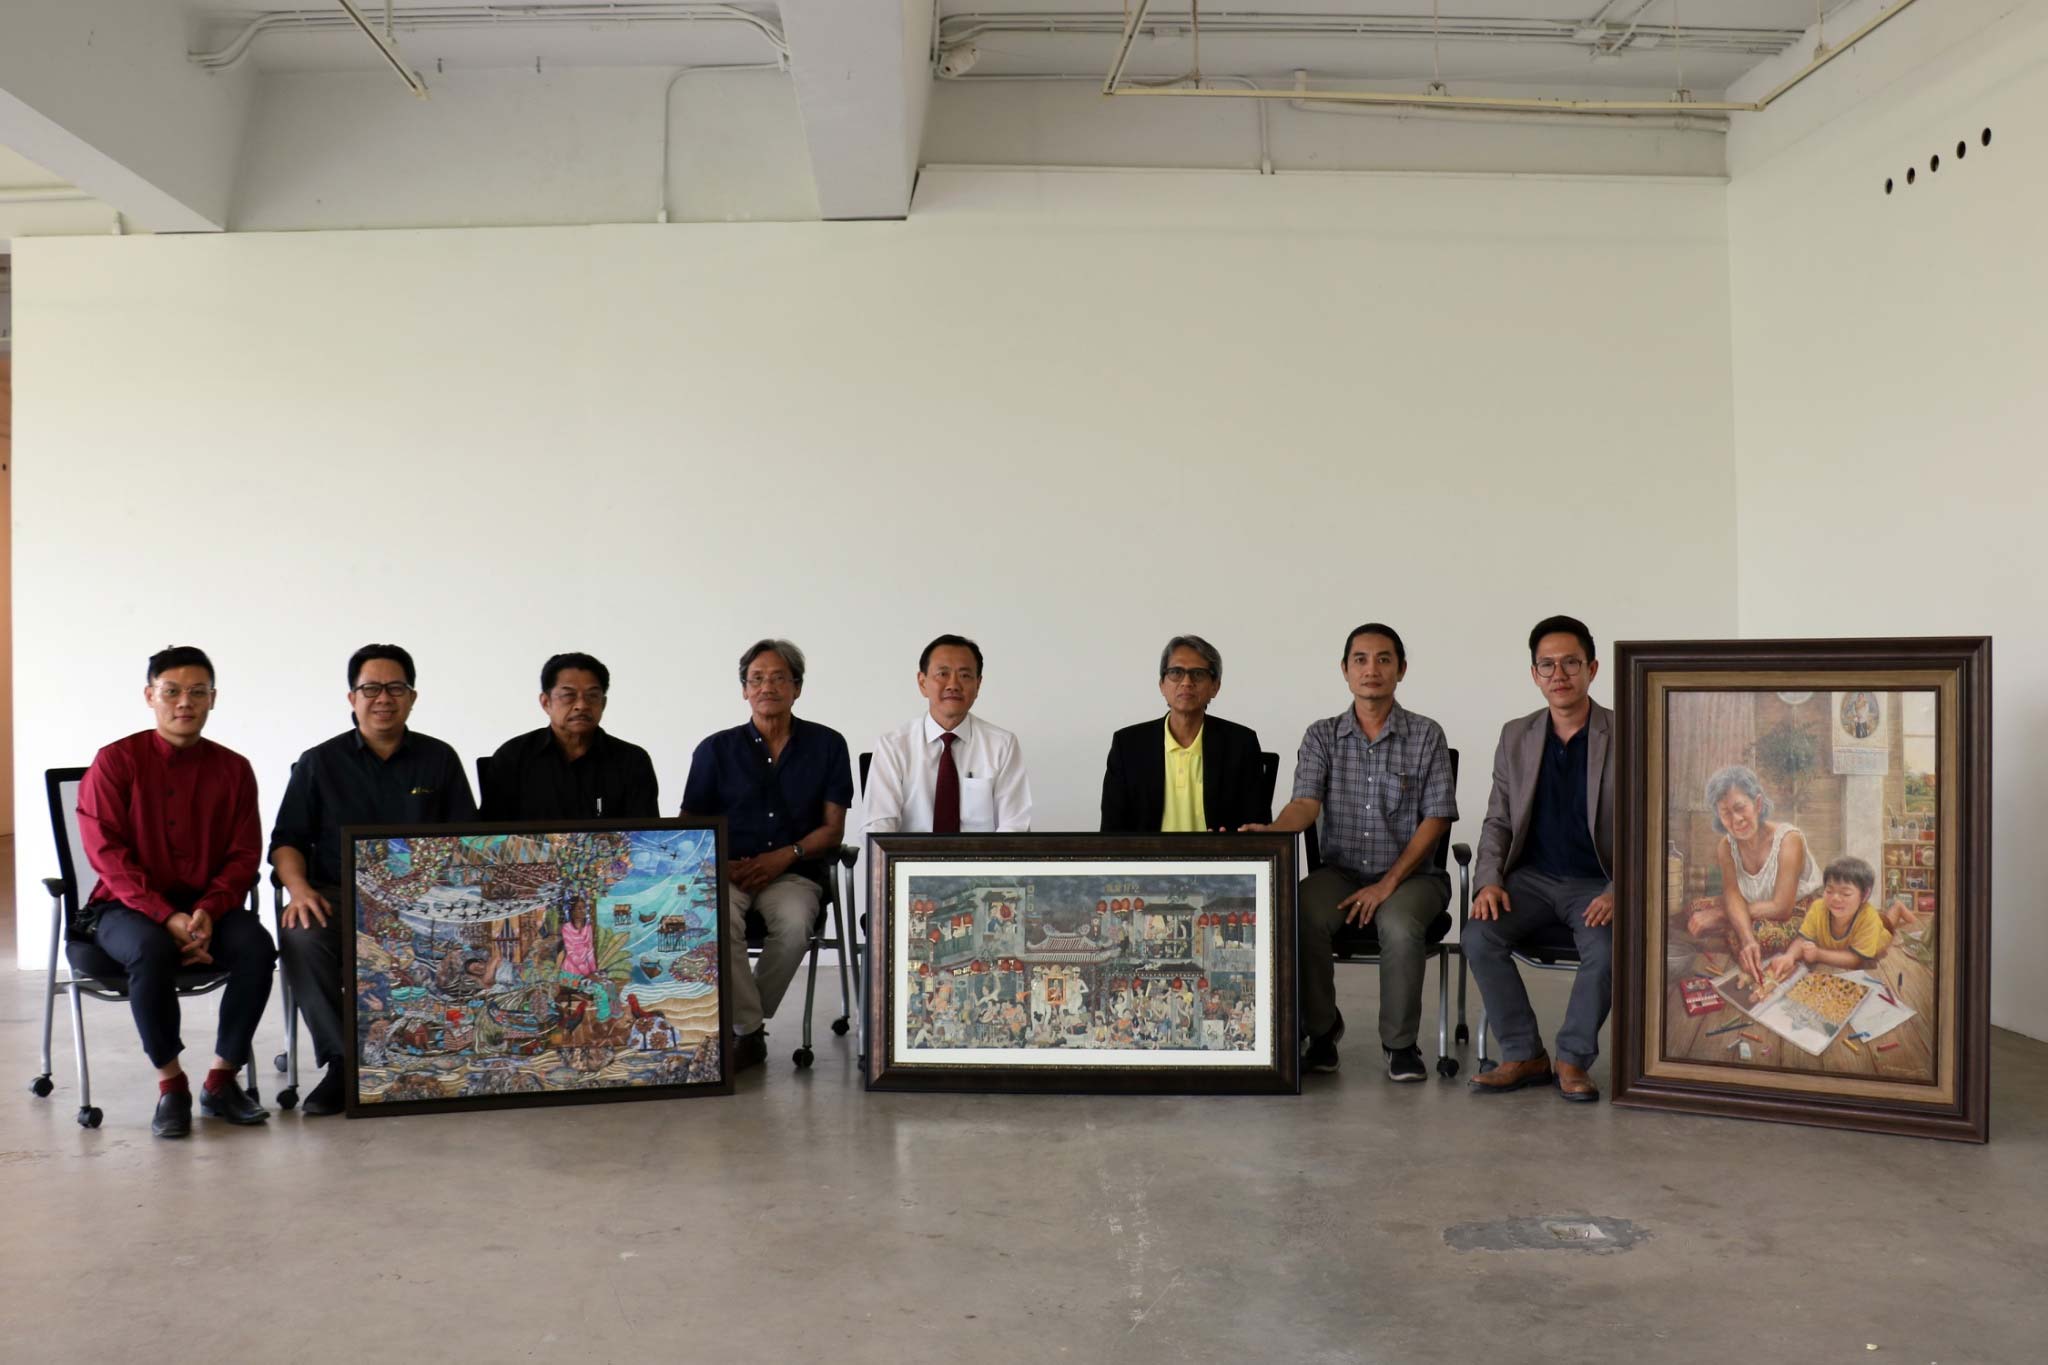 ผลการตัดสินการประกวดศิลปกรรมไทยออยล์ ครั้ง 1 ประจาปี 2562 หัวข้อ “ความสุขของคนไทย”| Announcement the Result : The 11st Thaioil Art Exhibition 2019